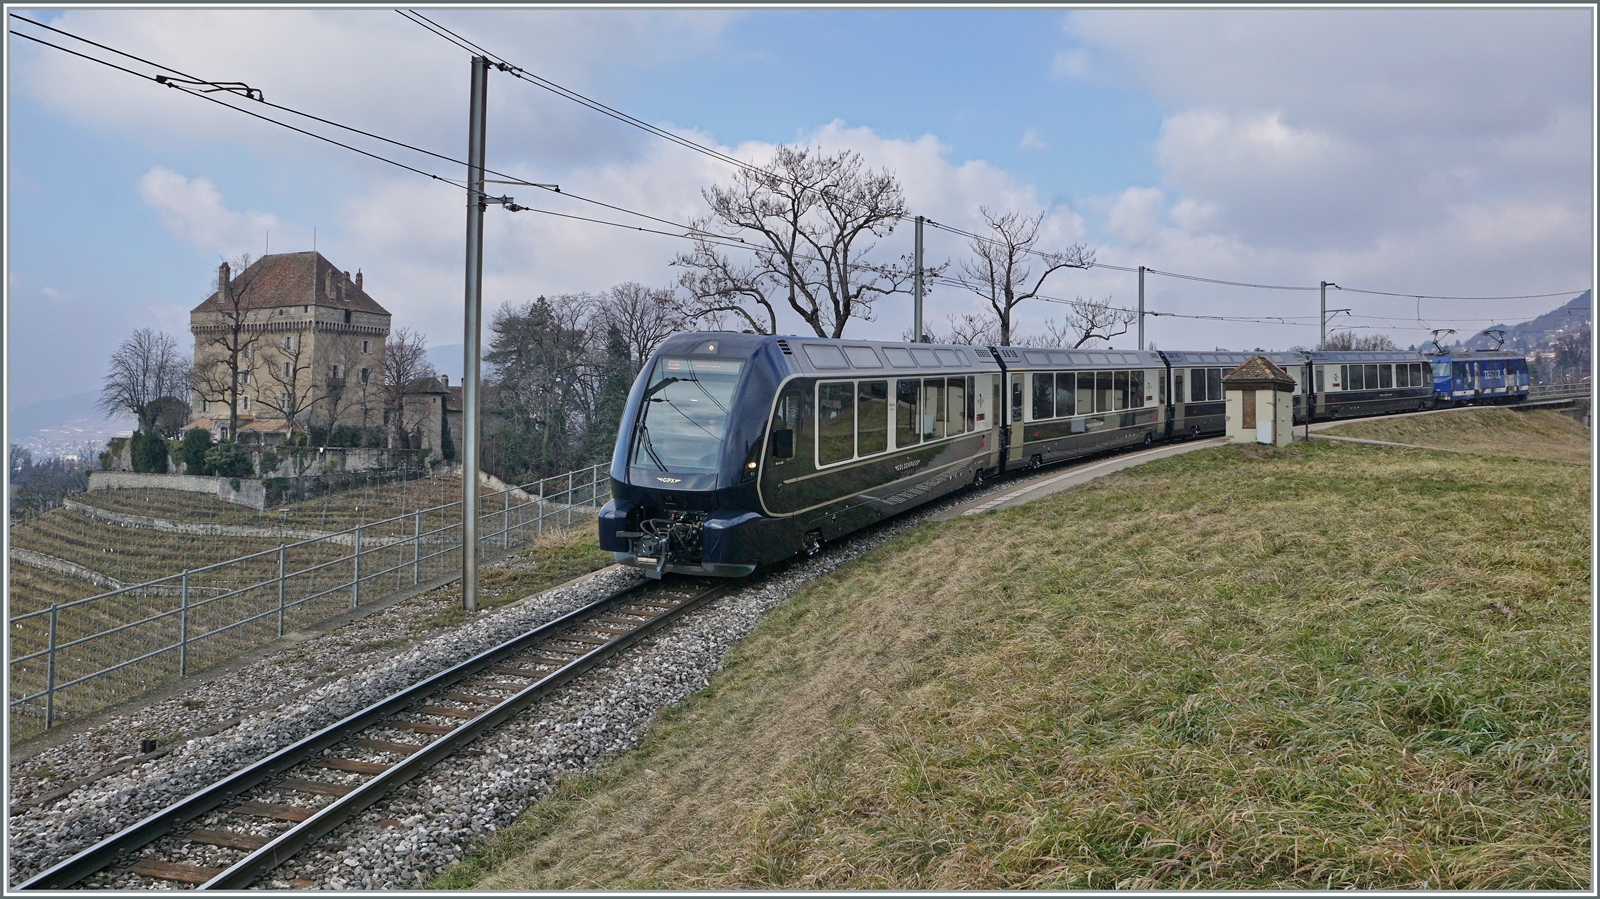 Der GoldenPass Express 4065 von Interlaken Ost nach Montreux fährt bei der Haltstelle Châtelard durch, links im Bild das namensgebende Schloss. 

8. Feb., 2023